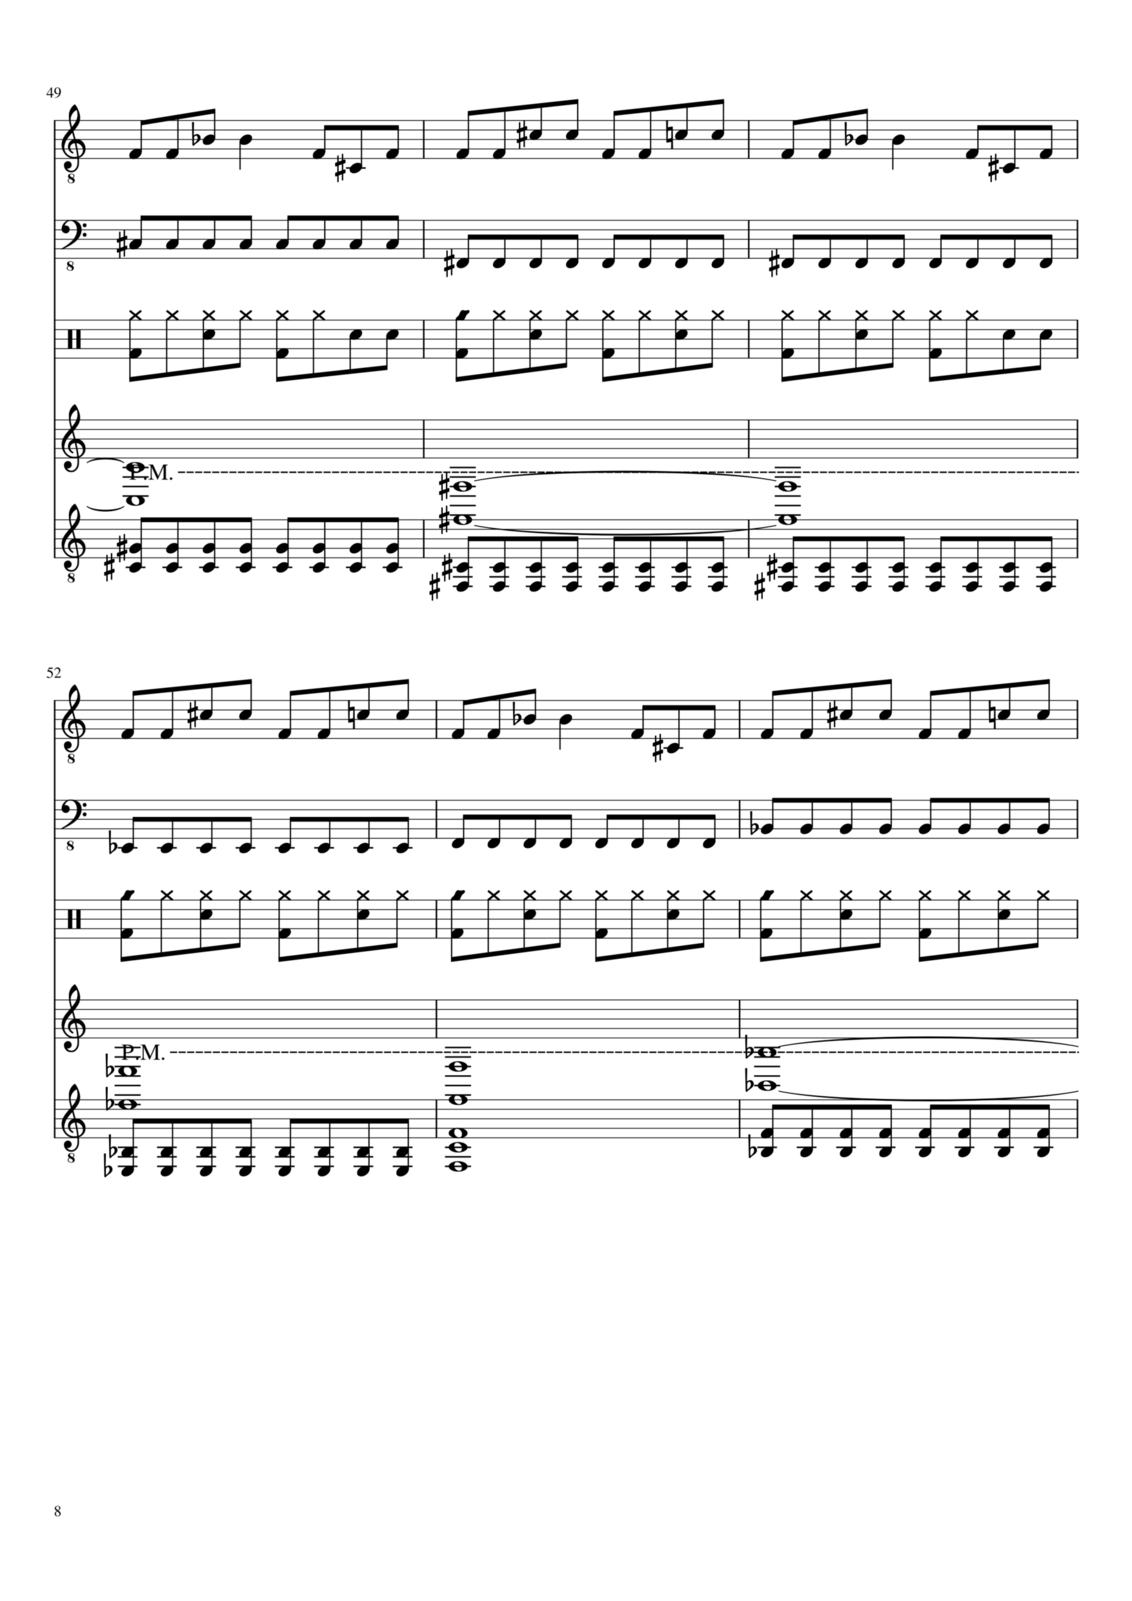 Vechnaya prizrachnaya vstrechnaya slide, Image 8